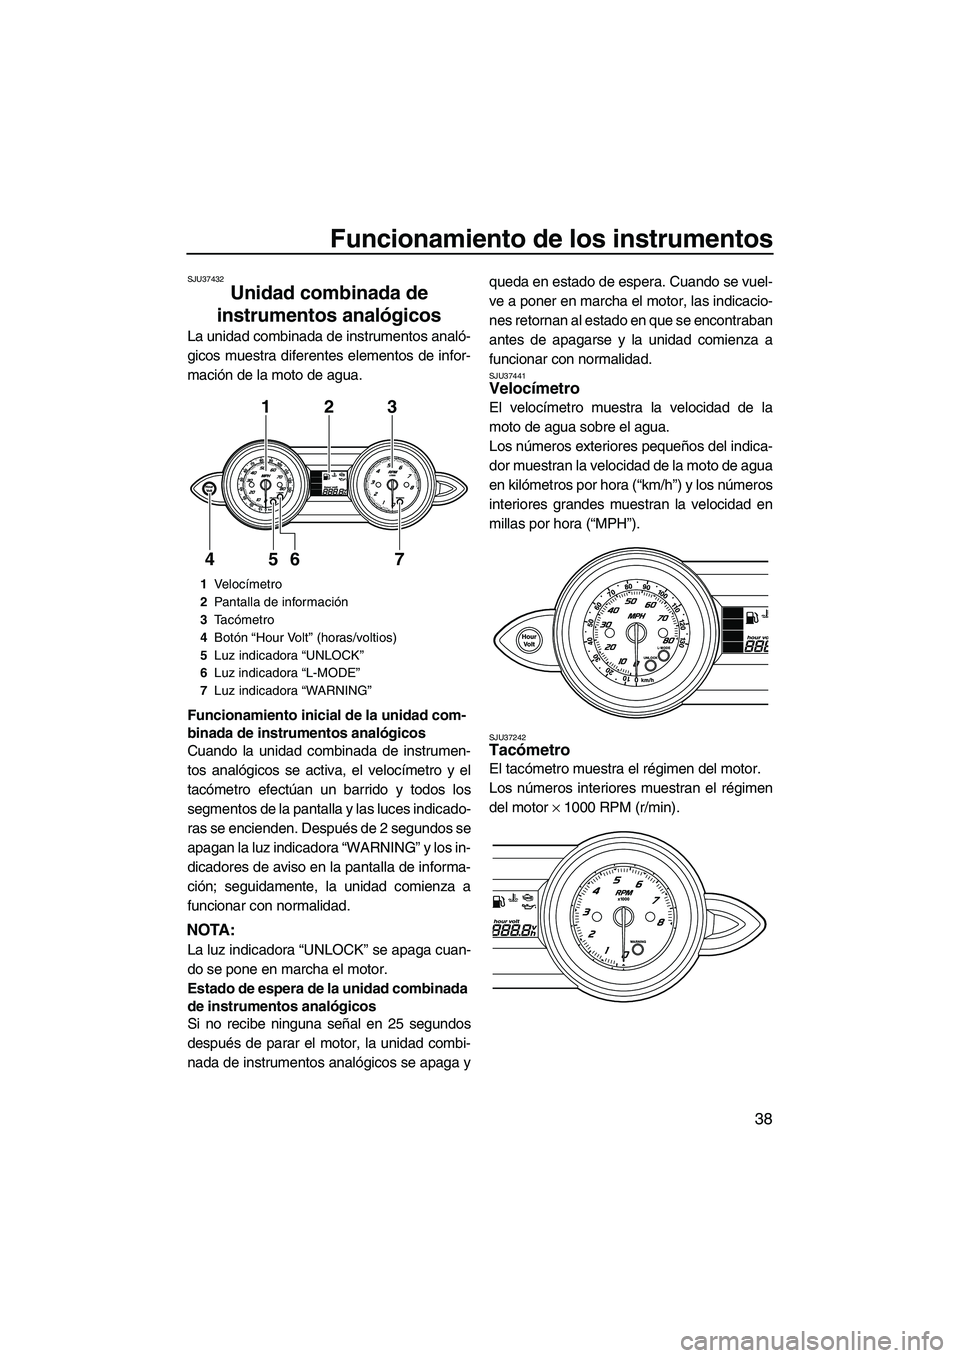 YAMAHA FZS 2013  Manuale de Empleo (in Spanish) Funcionamiento de los instrumentos
38
SJU37432
Unidad combinada de 
instrumentos analógicos 
La unidad combinada de instrumentos analó-
gicos muestra diferentes elementos de infor-
mación de la mot